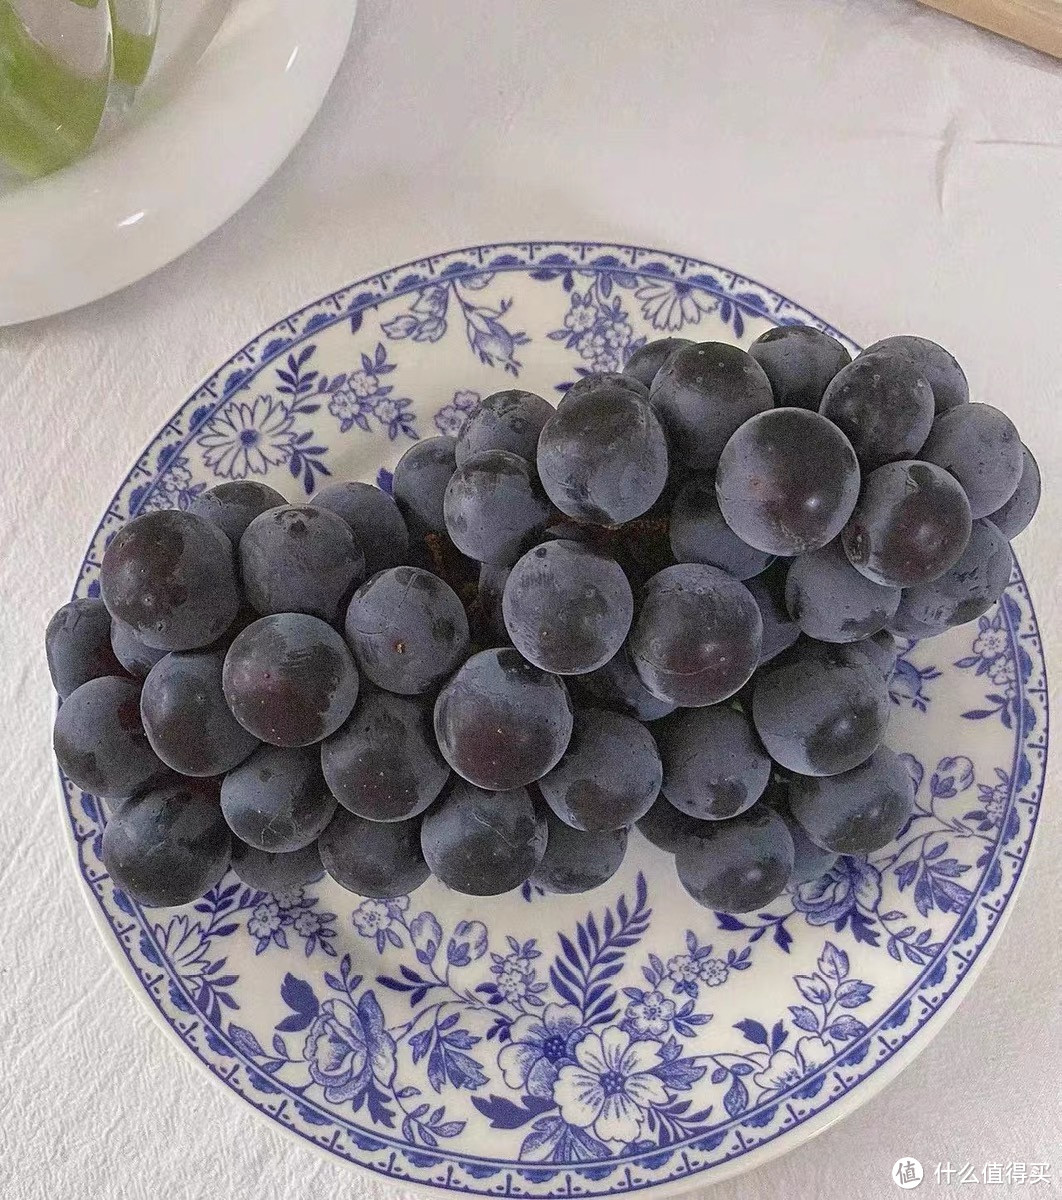 「葡萄的做法，让你重新认识葡萄!」——换一种方式吃葡萄，惊喜味蕾的奇妙之旅！